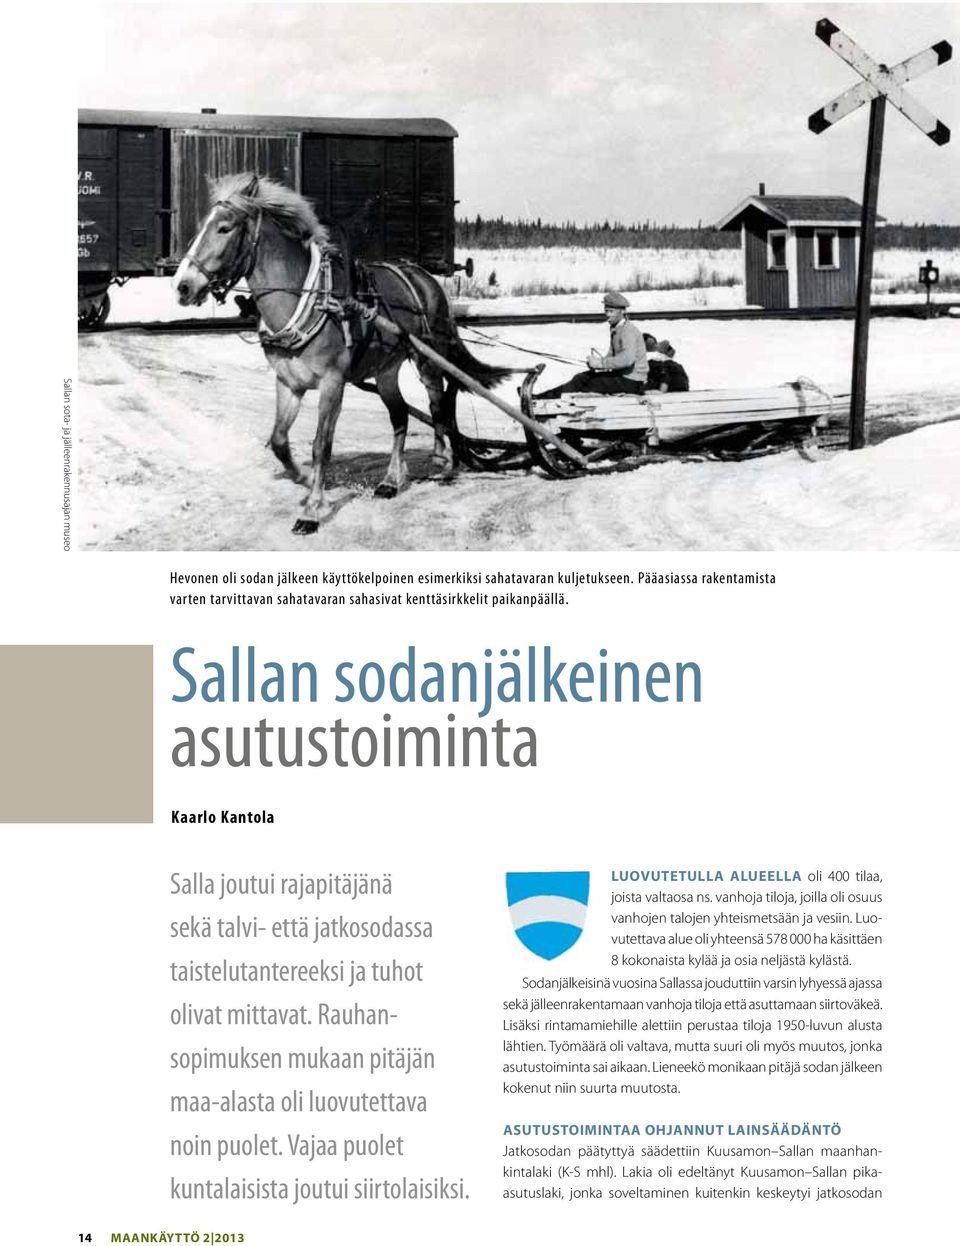 Sallan sodanjälkeinen asutustoiminta Kaarlo Kantola Salla joutui rajapitäjänä sekä talvi- että jatkosodassa taistelutantereeksi ja tuhot olivat mittavat.